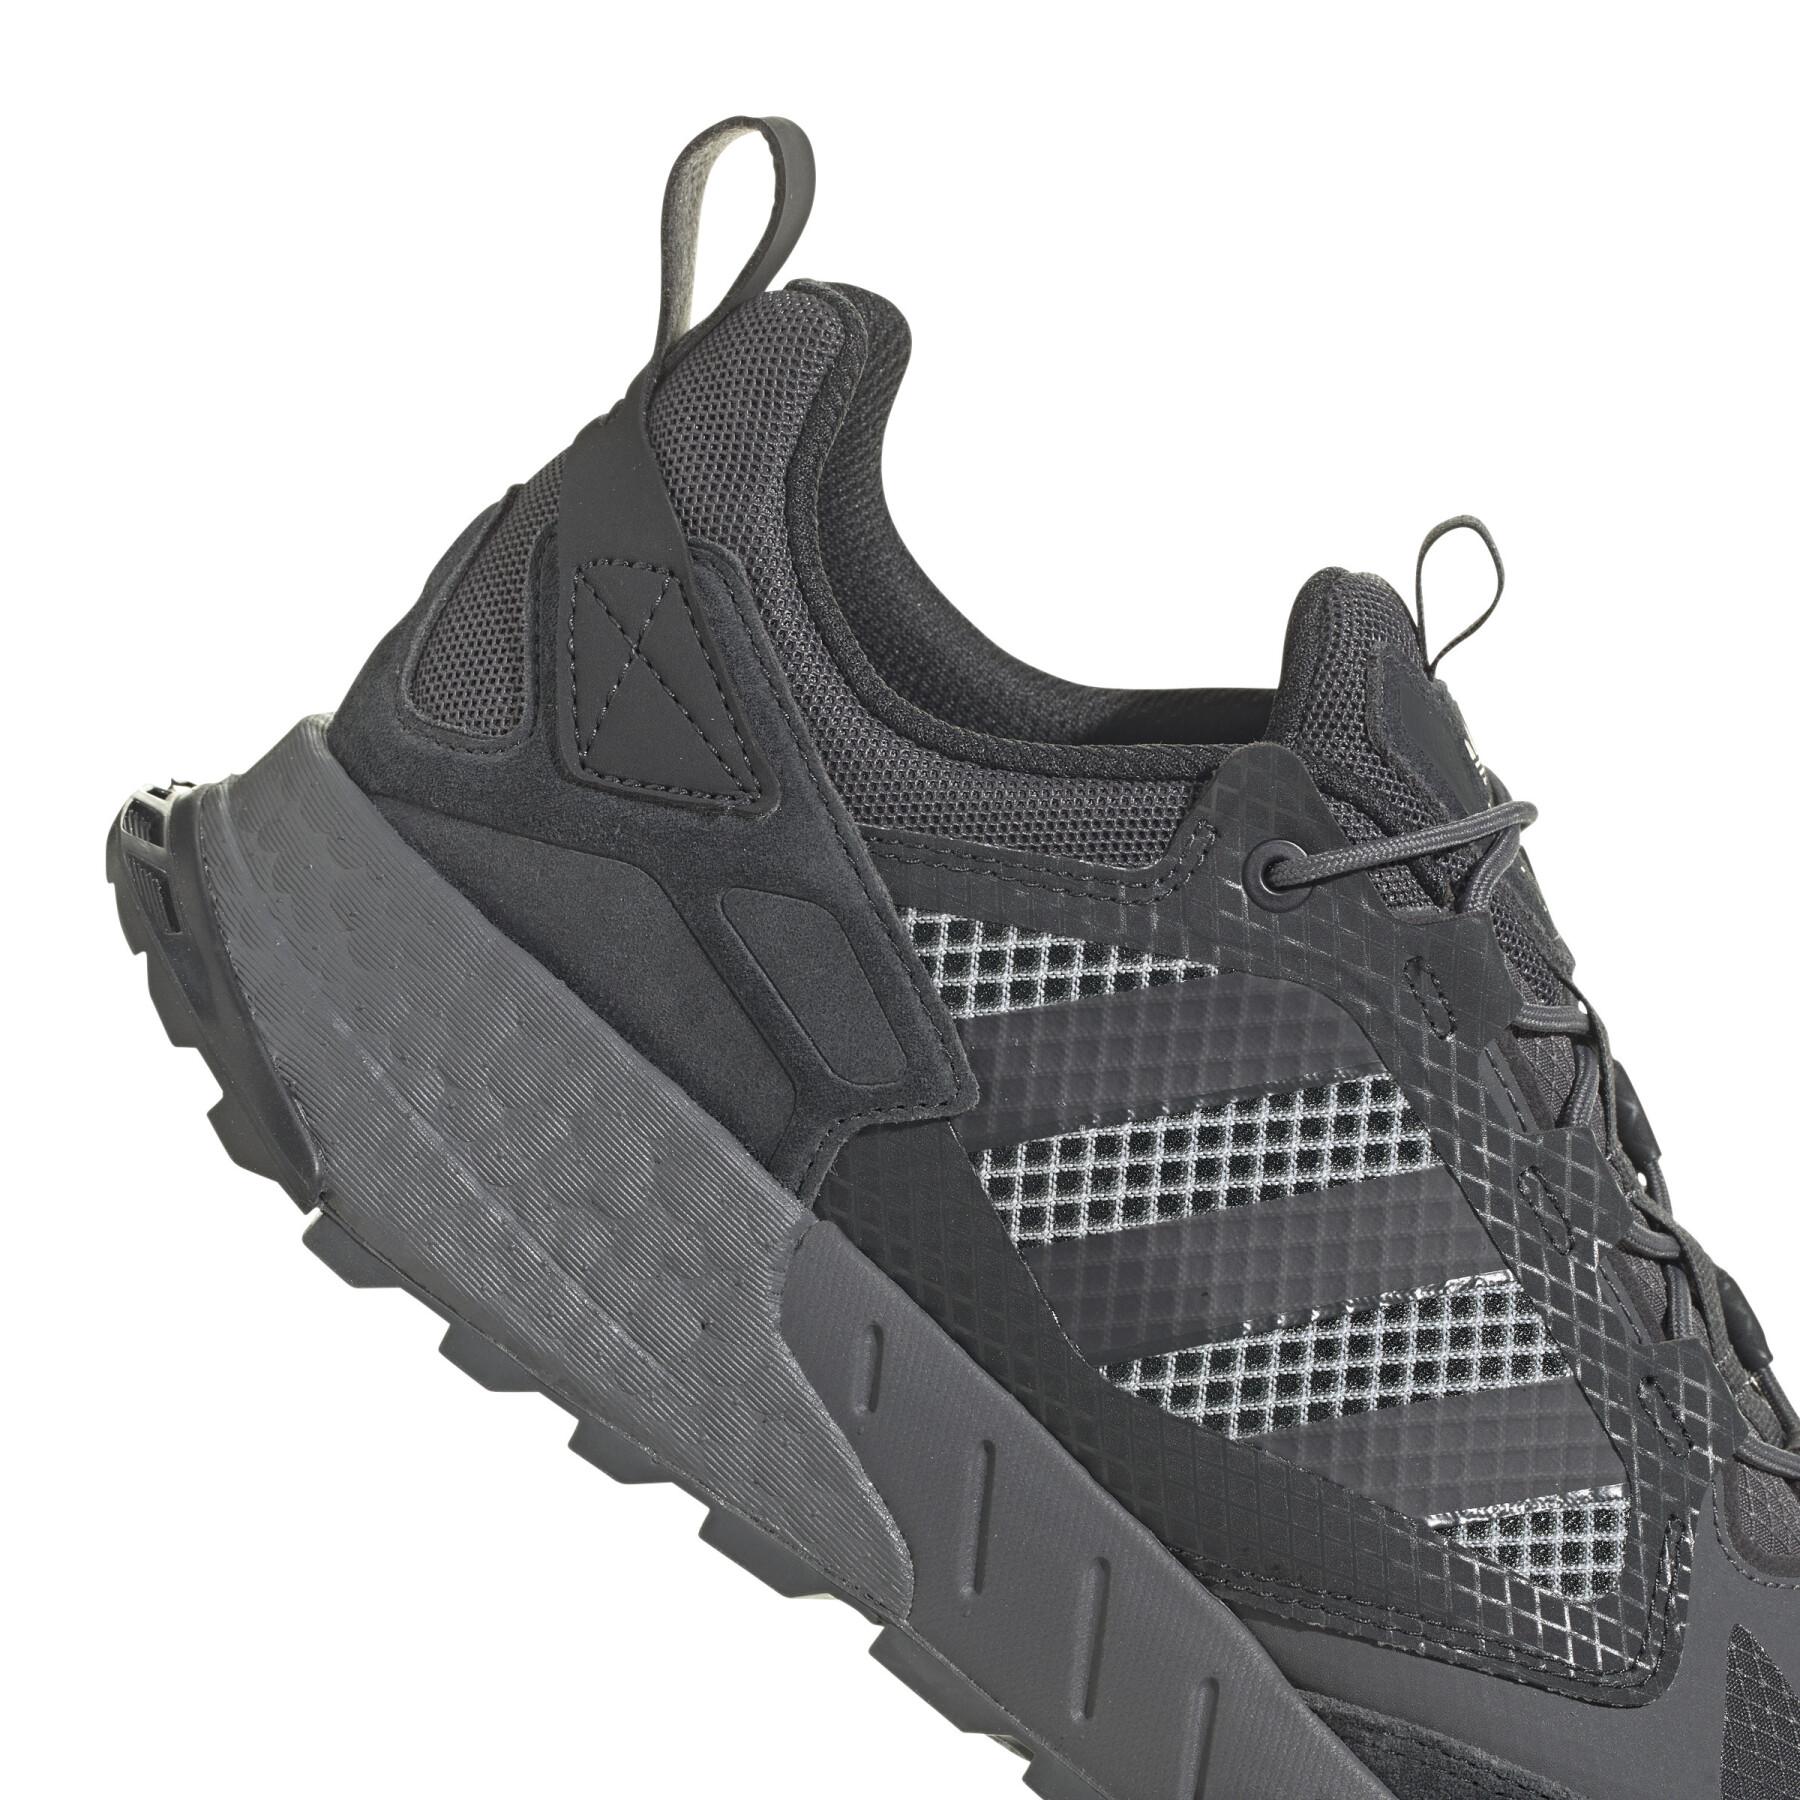 Seasonality Boost 2.0 Herren Sneakers Zx 1K Sneakers Lifestyle - - - adidas adidas